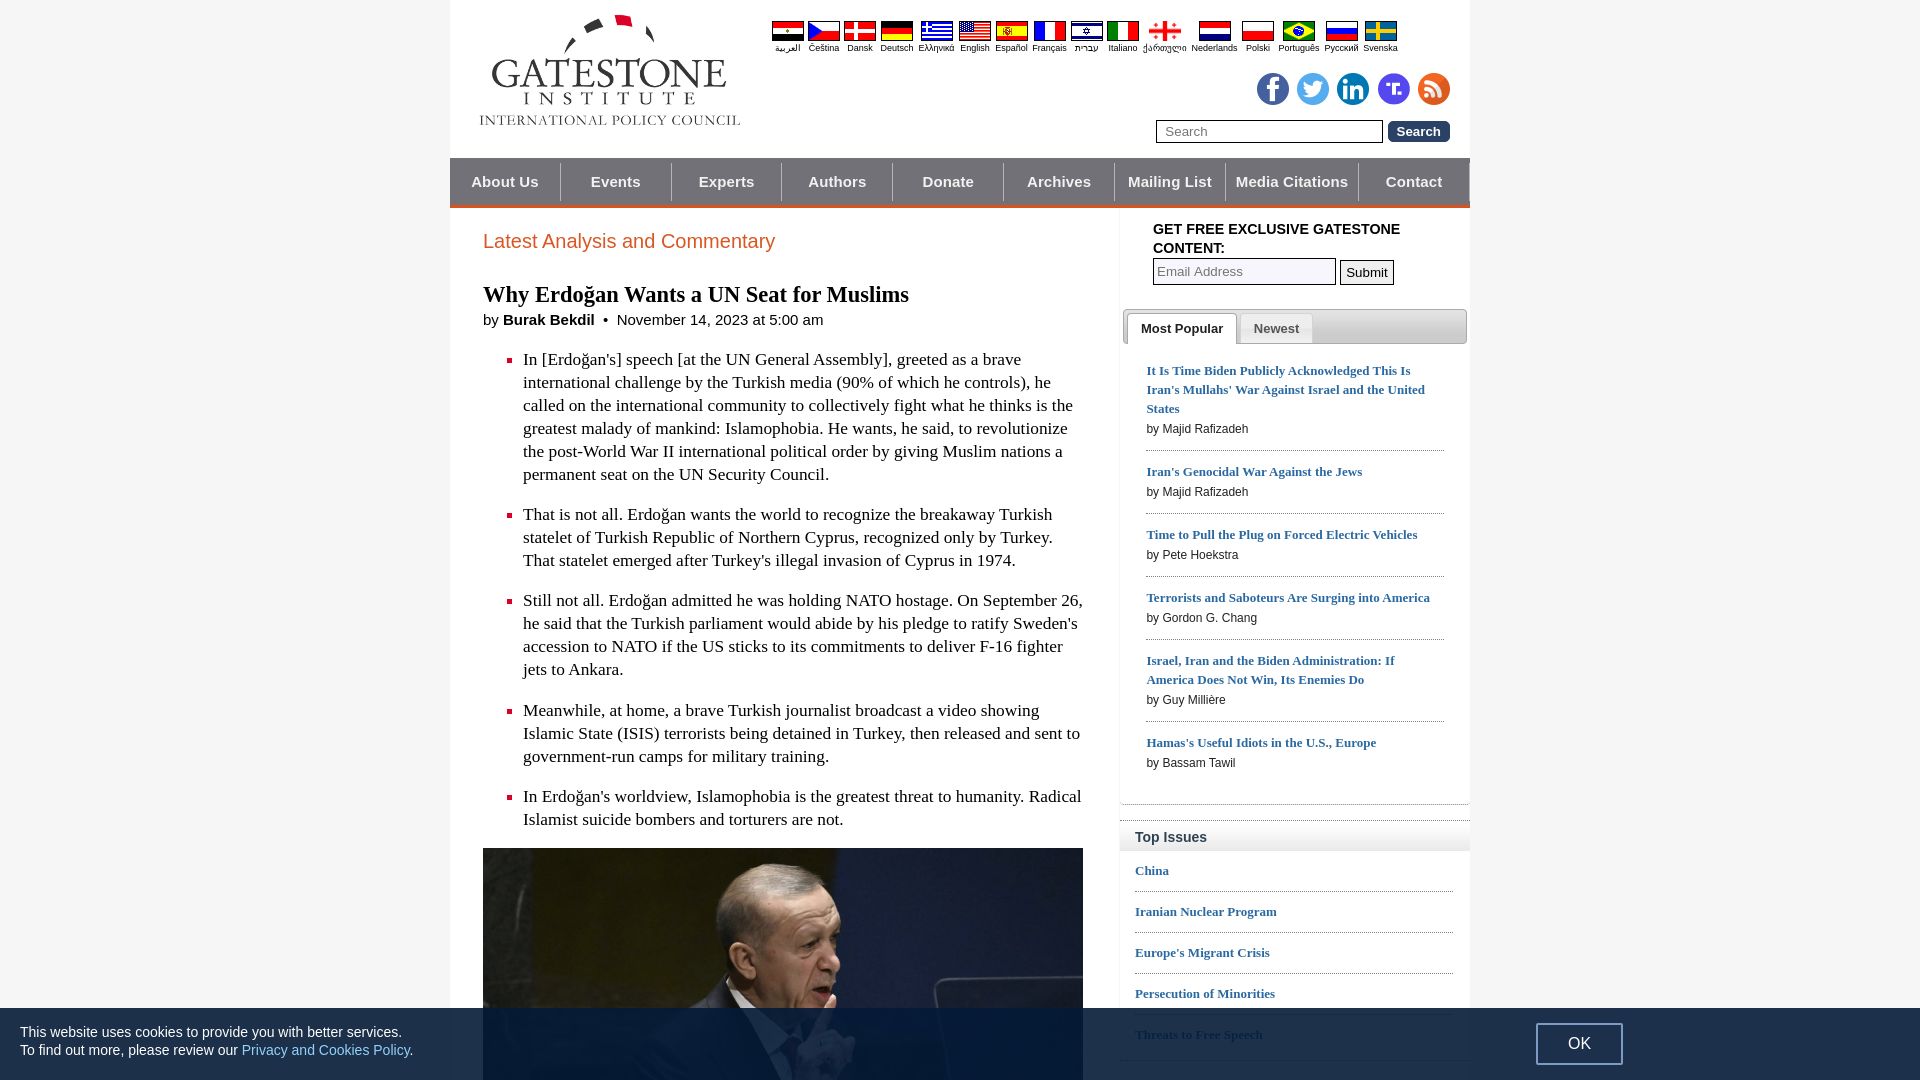 Webseitenstatus gatestoneinstitute.org ist   ONLINE